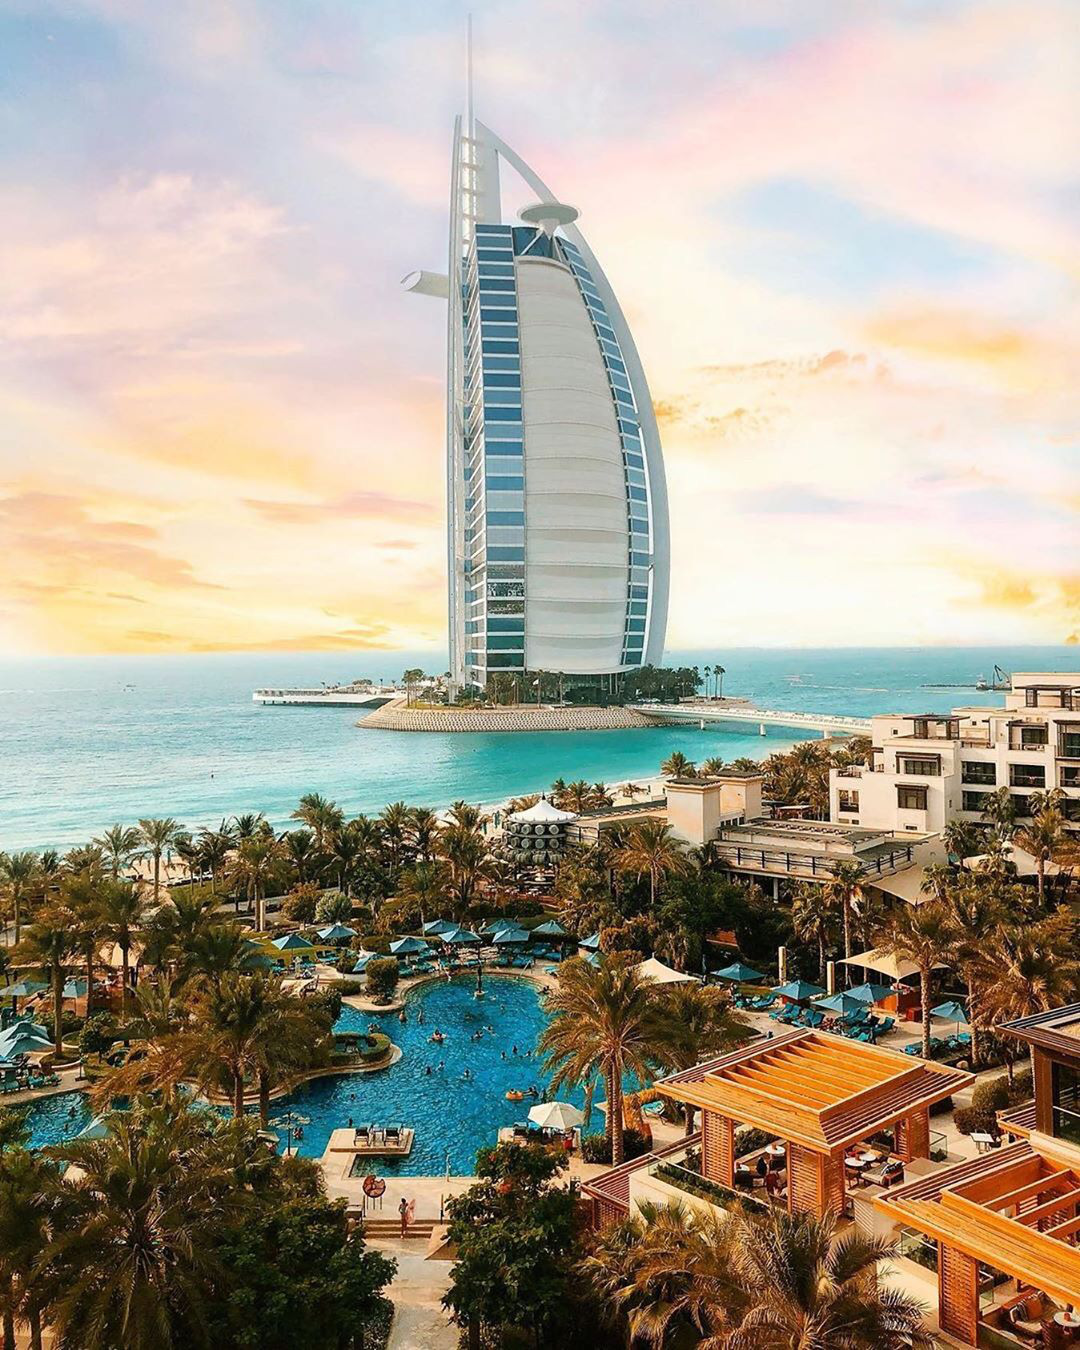 Ở khách sạn 7 sao duy nhất thế giới ở Dubai, hóa ra vì quá đẳng cấp nên du khách quốc tế thêm ... 2 sao?  - Ảnh 1.